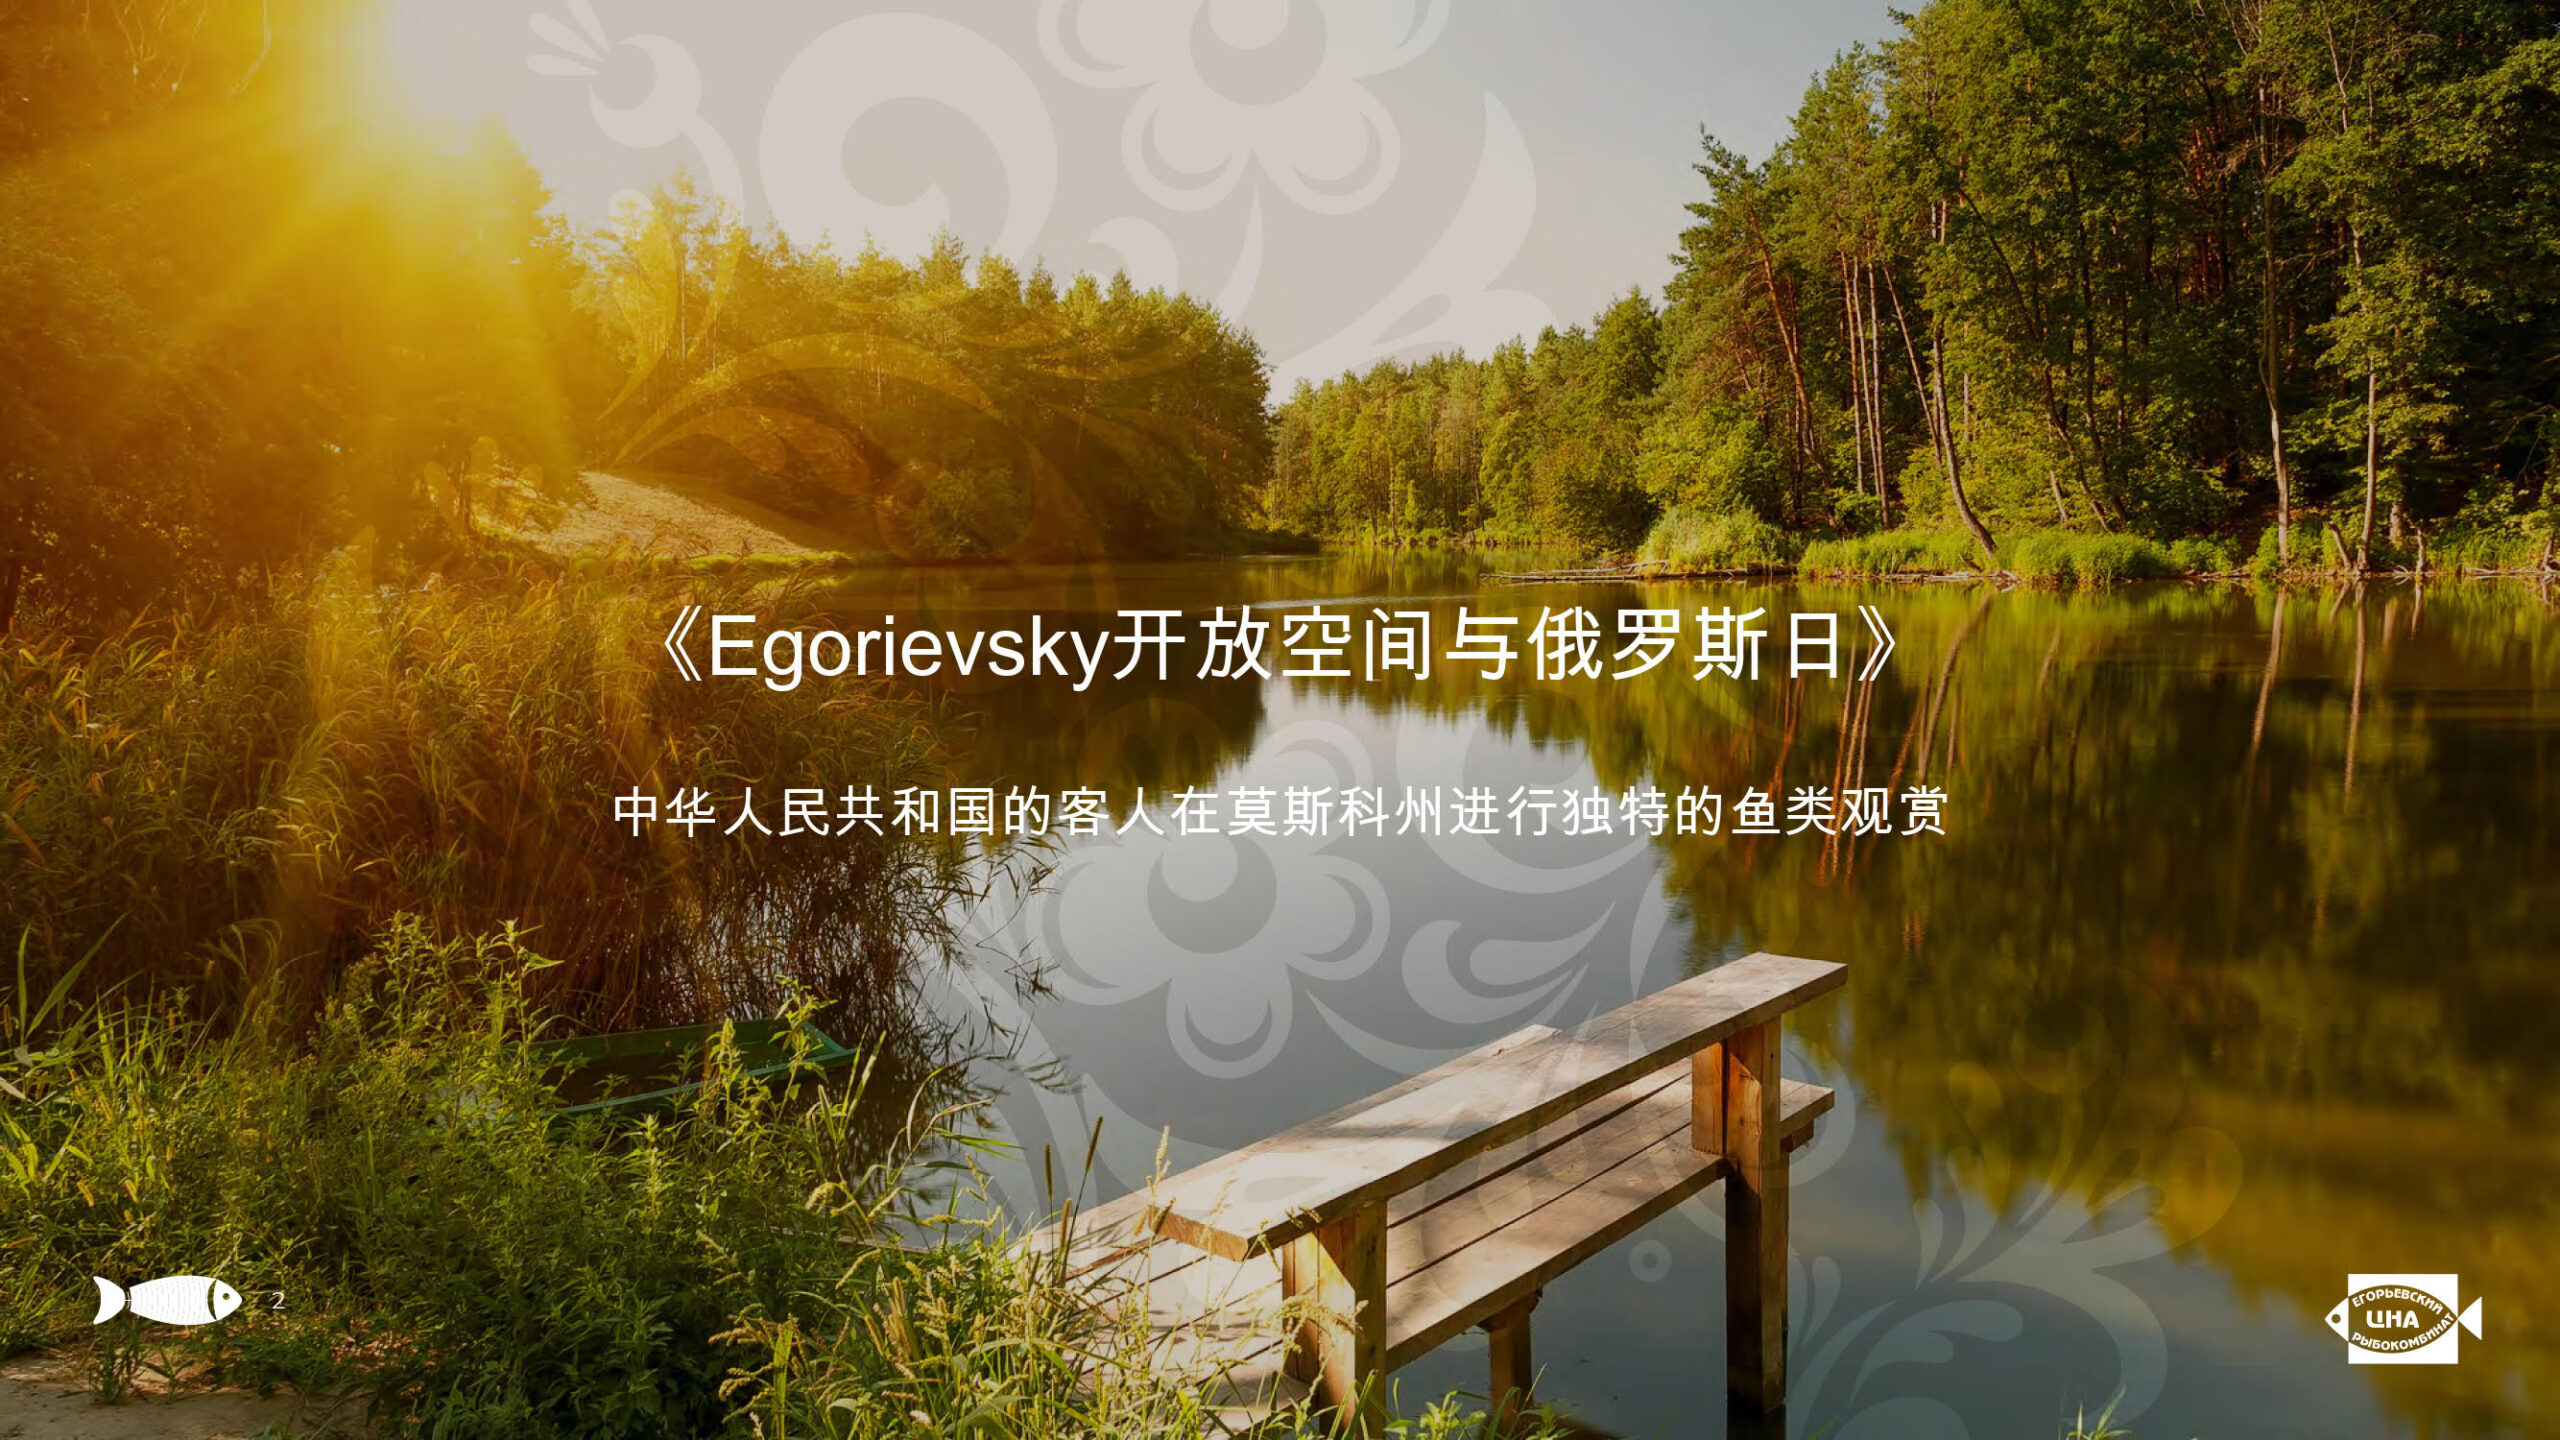 Презентация услуг «Егорьевского рыбкомбината «ЦНА» на китайском языке слайд 2